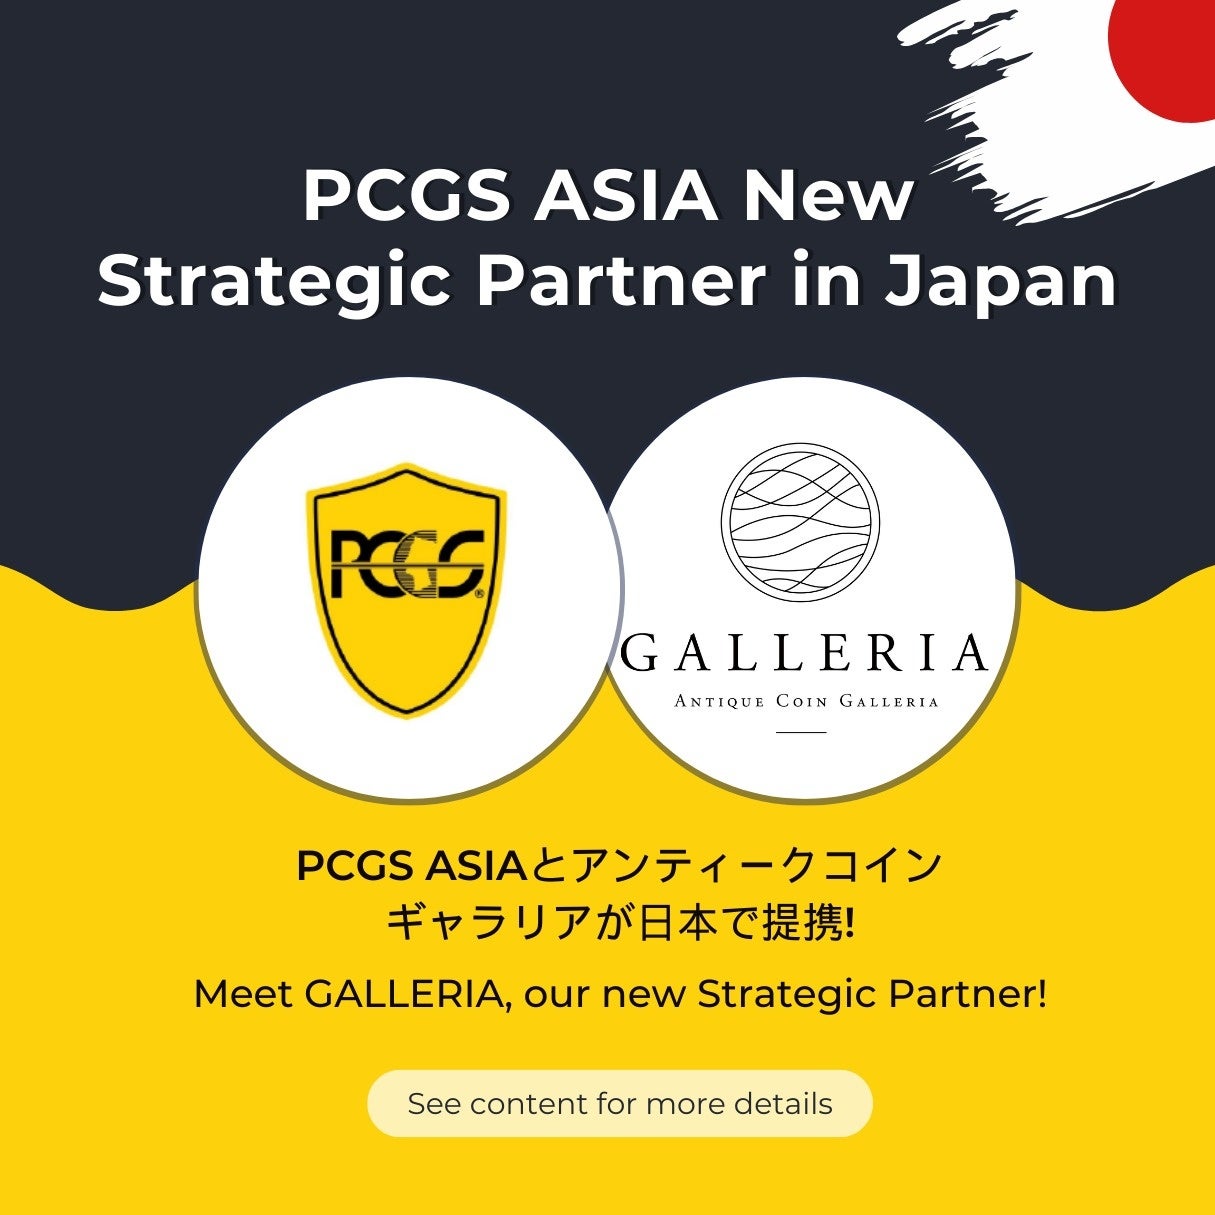 世界最大手コイングレーディング機関のPCGS ASIA社と「戦略的パートナー」契約を締結しました